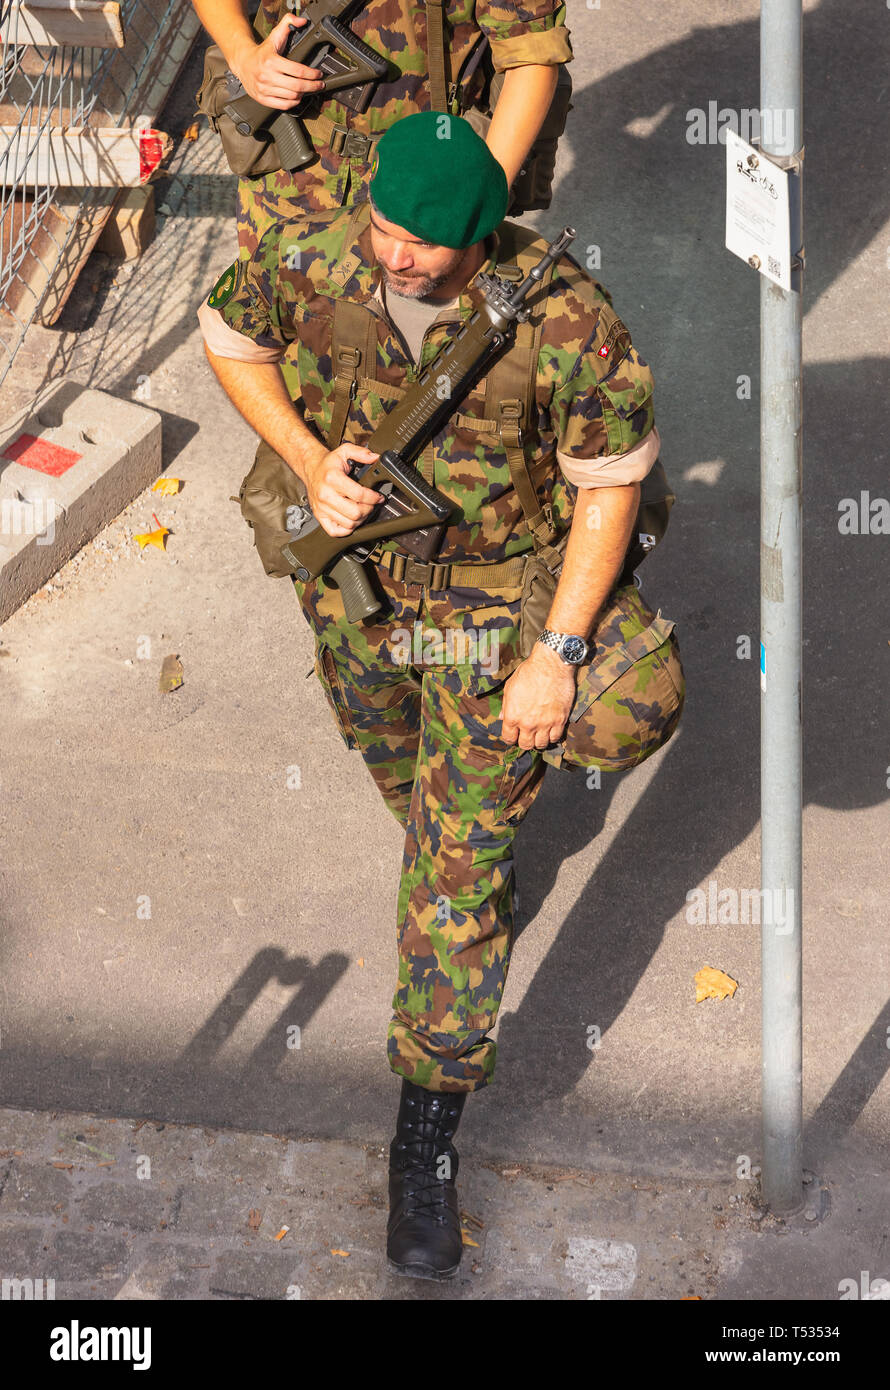 Swiss armed forces immagini e fotografie stock ad alta risoluzione - Alamy